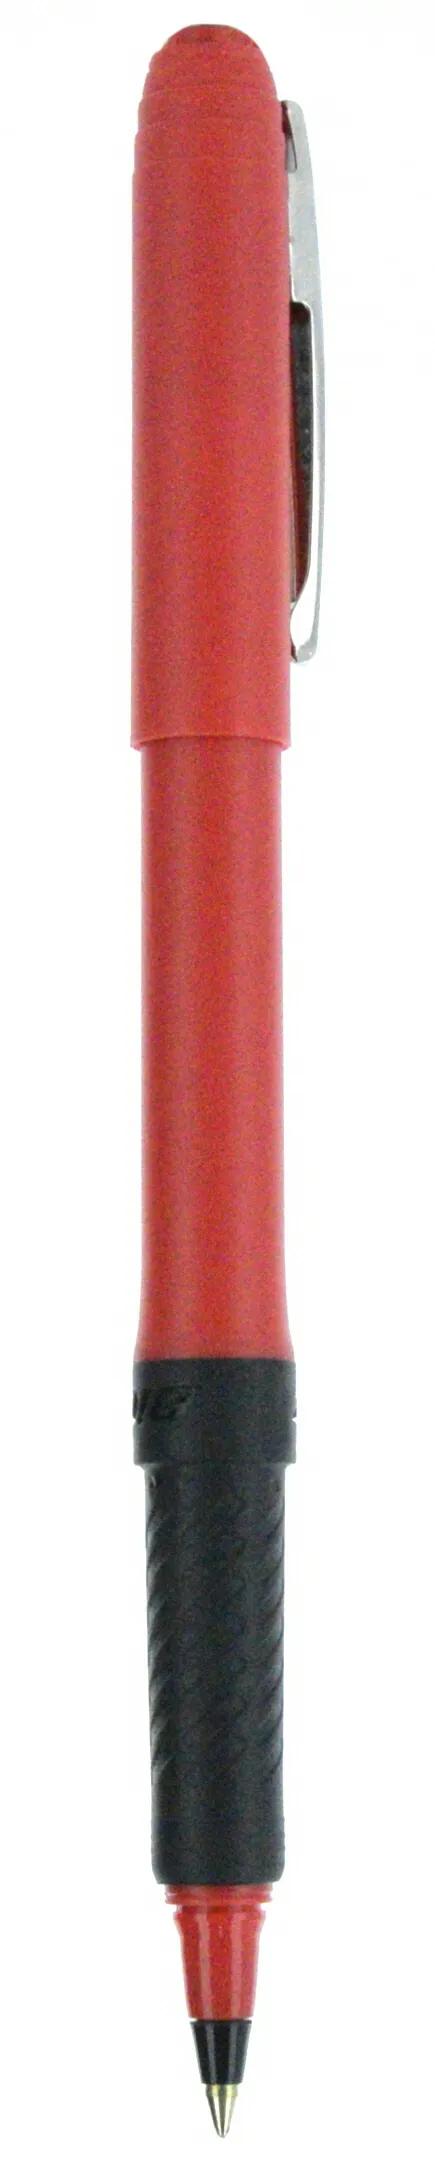 BIC® Grip Roller Pen 99 of 147